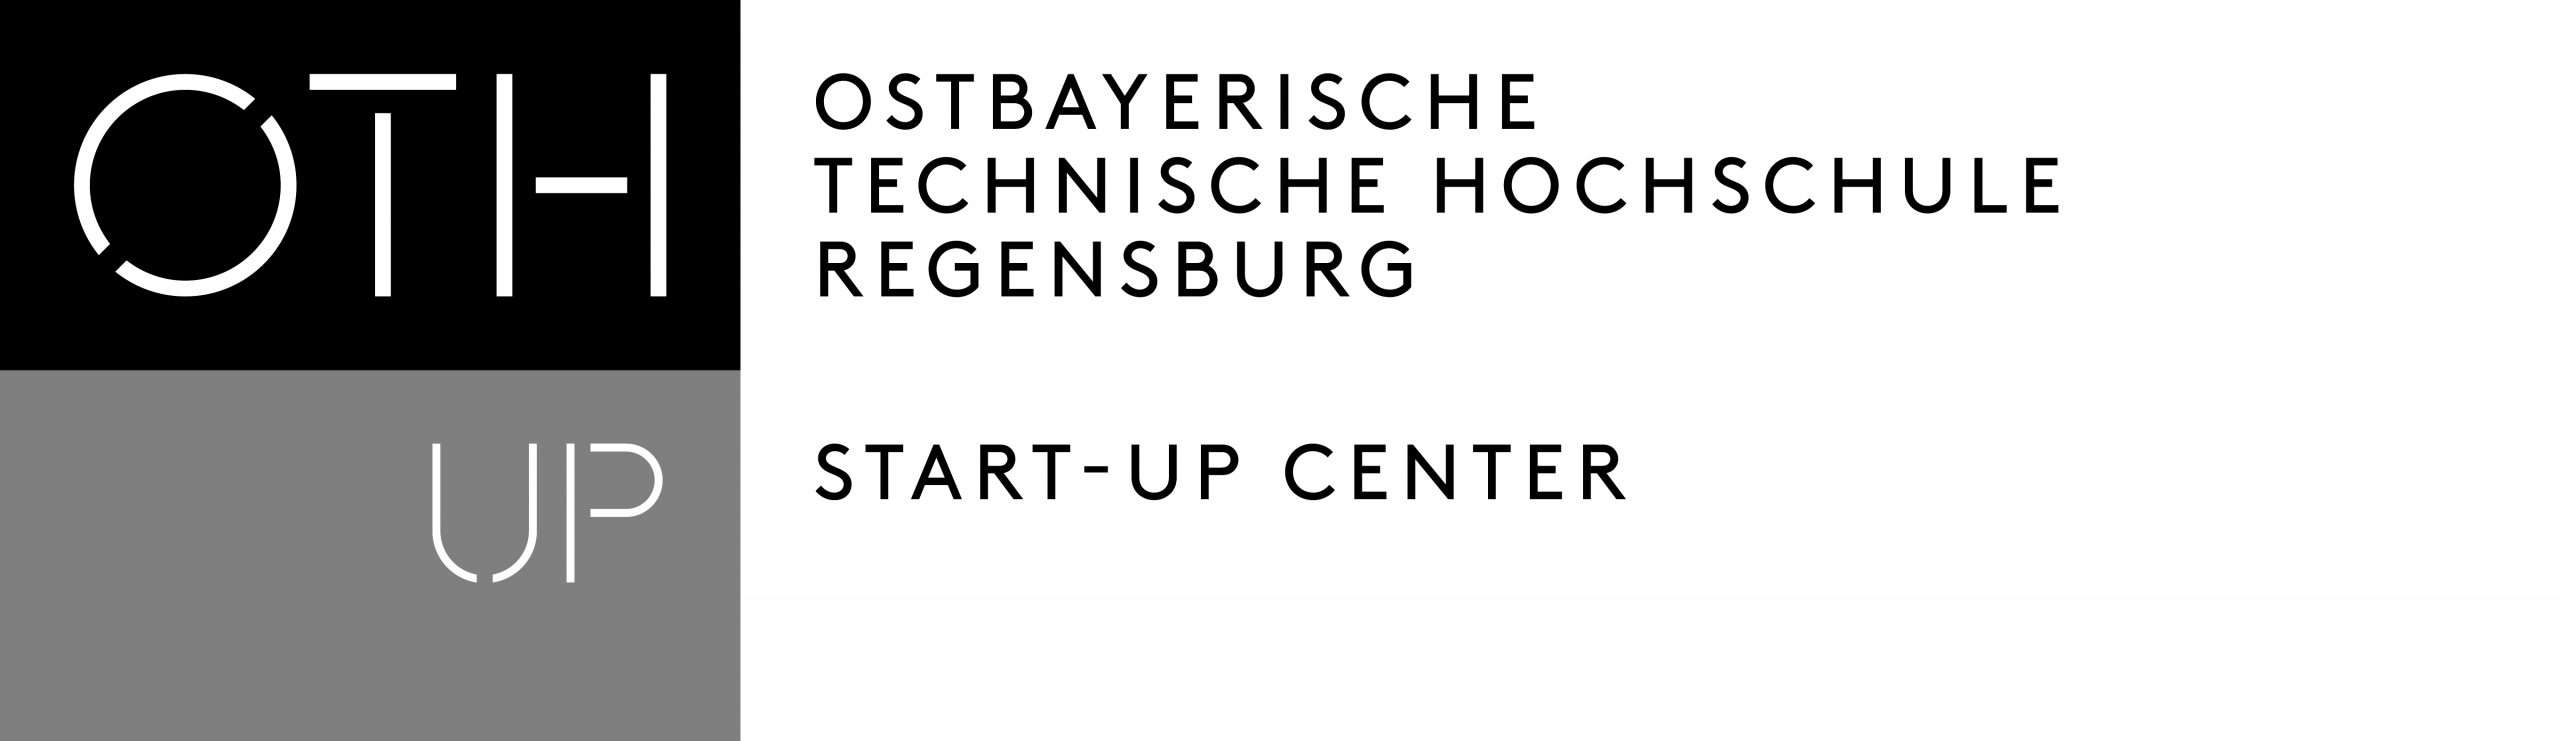 Start-up center OTH Regensburg